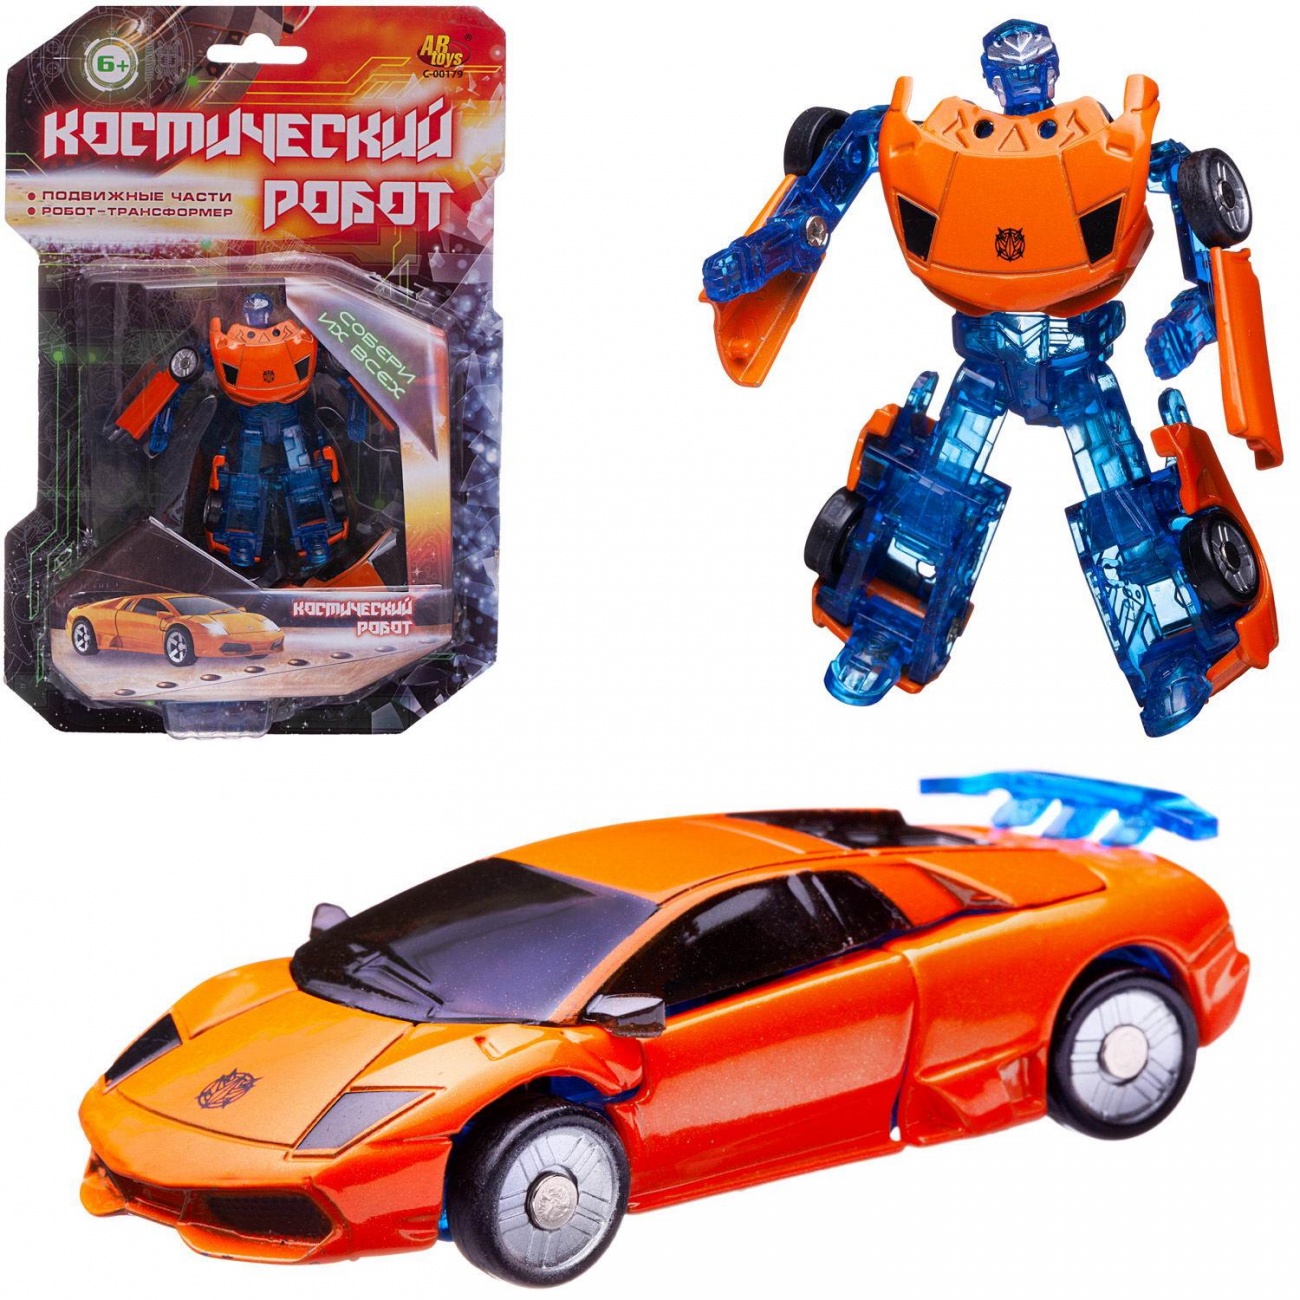 Робот-машина ABtoys Космический робот оранжево-синий C-00179/оранжево-синий